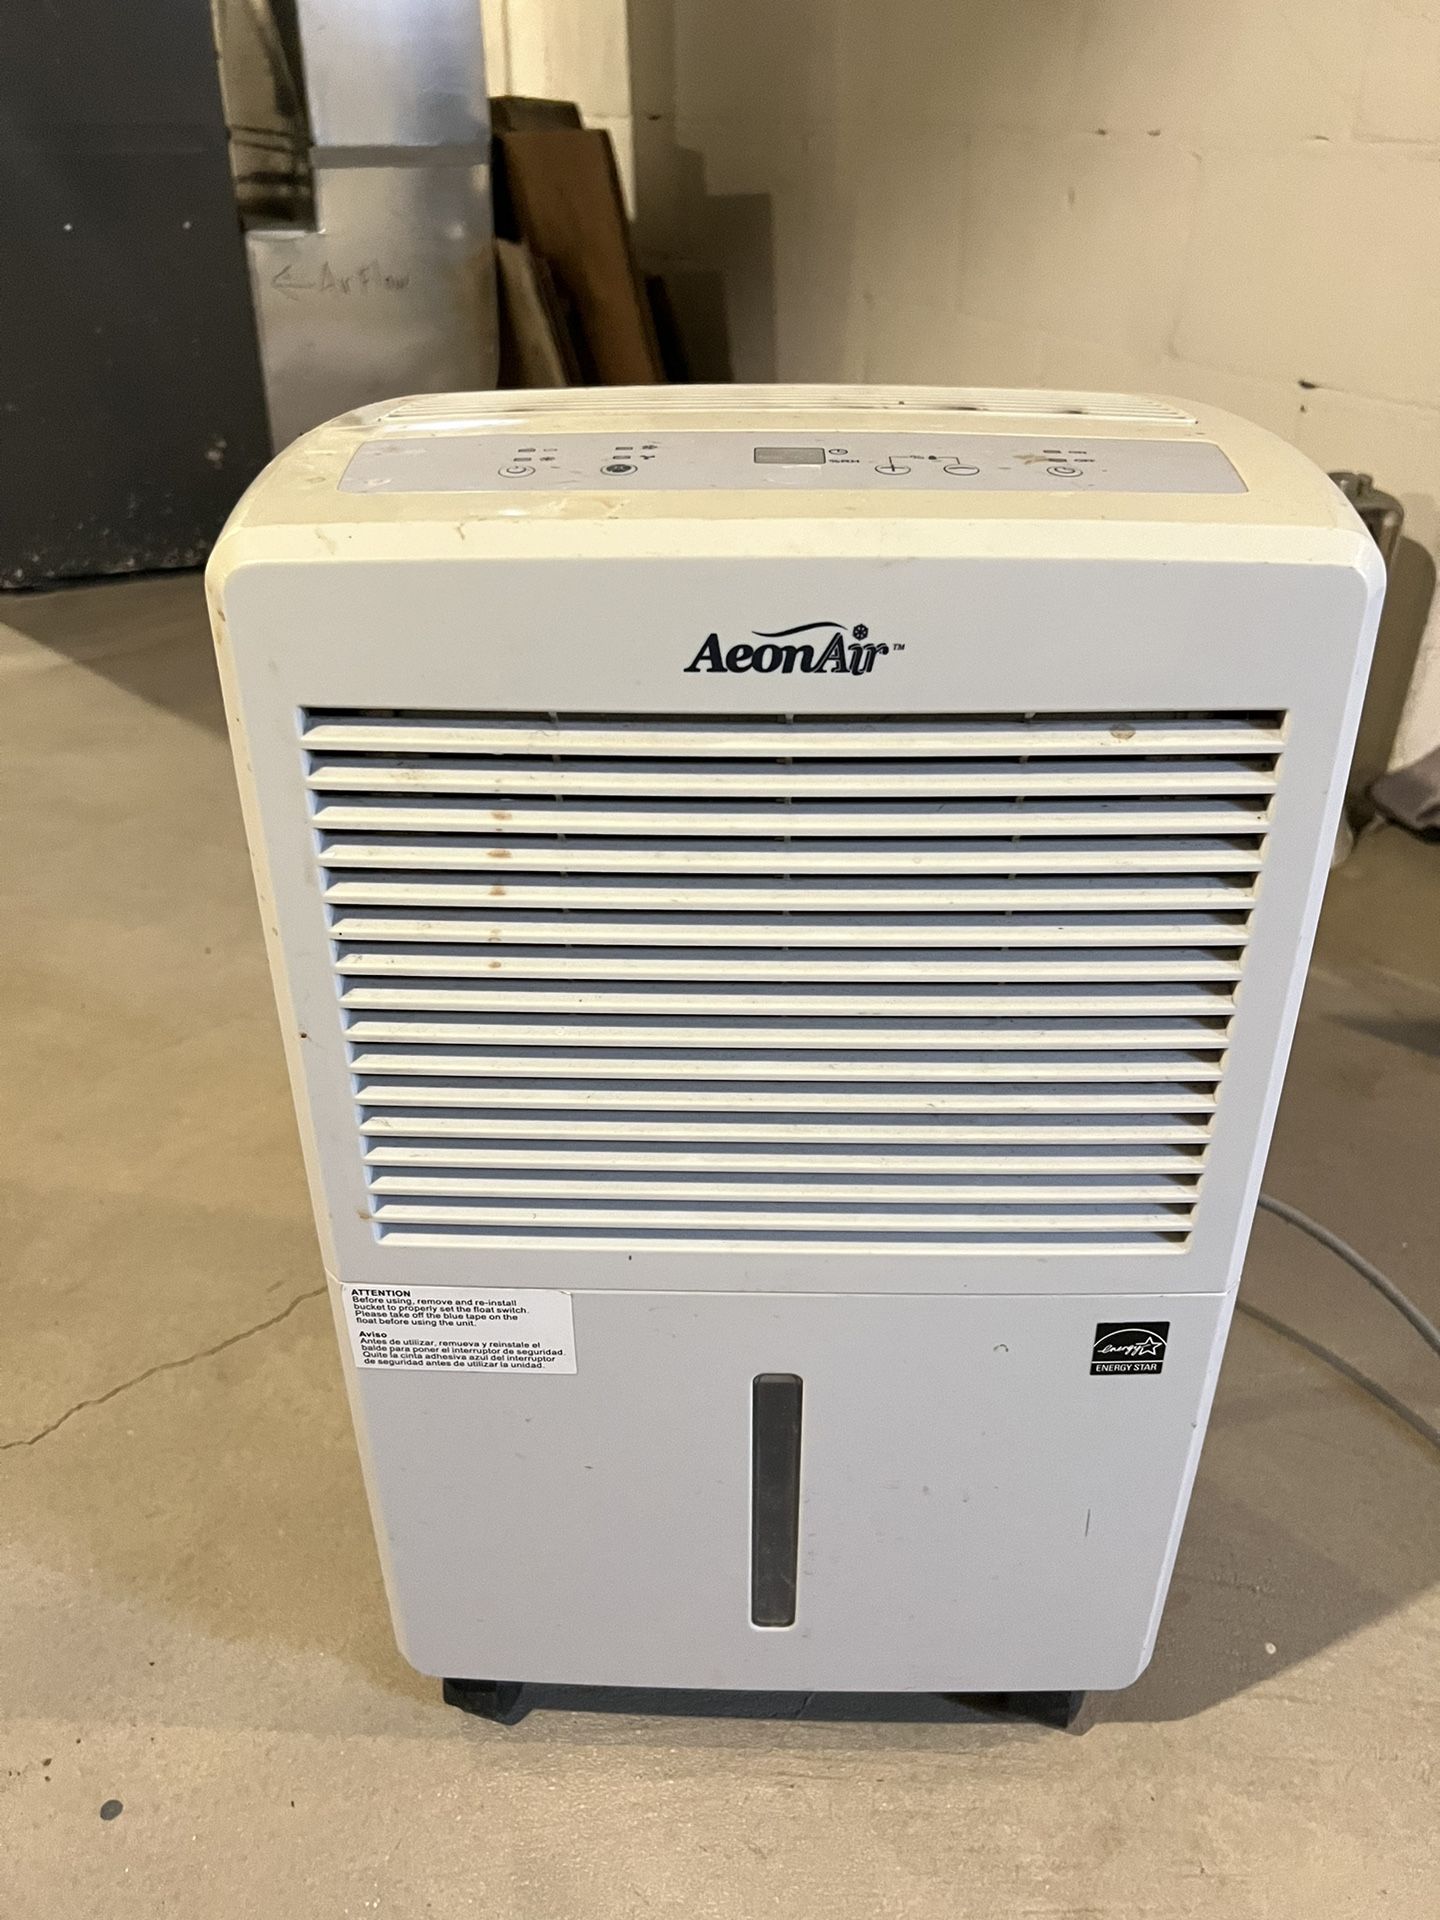 Aeonair Indoor Air Humidifier/Dehumidifier